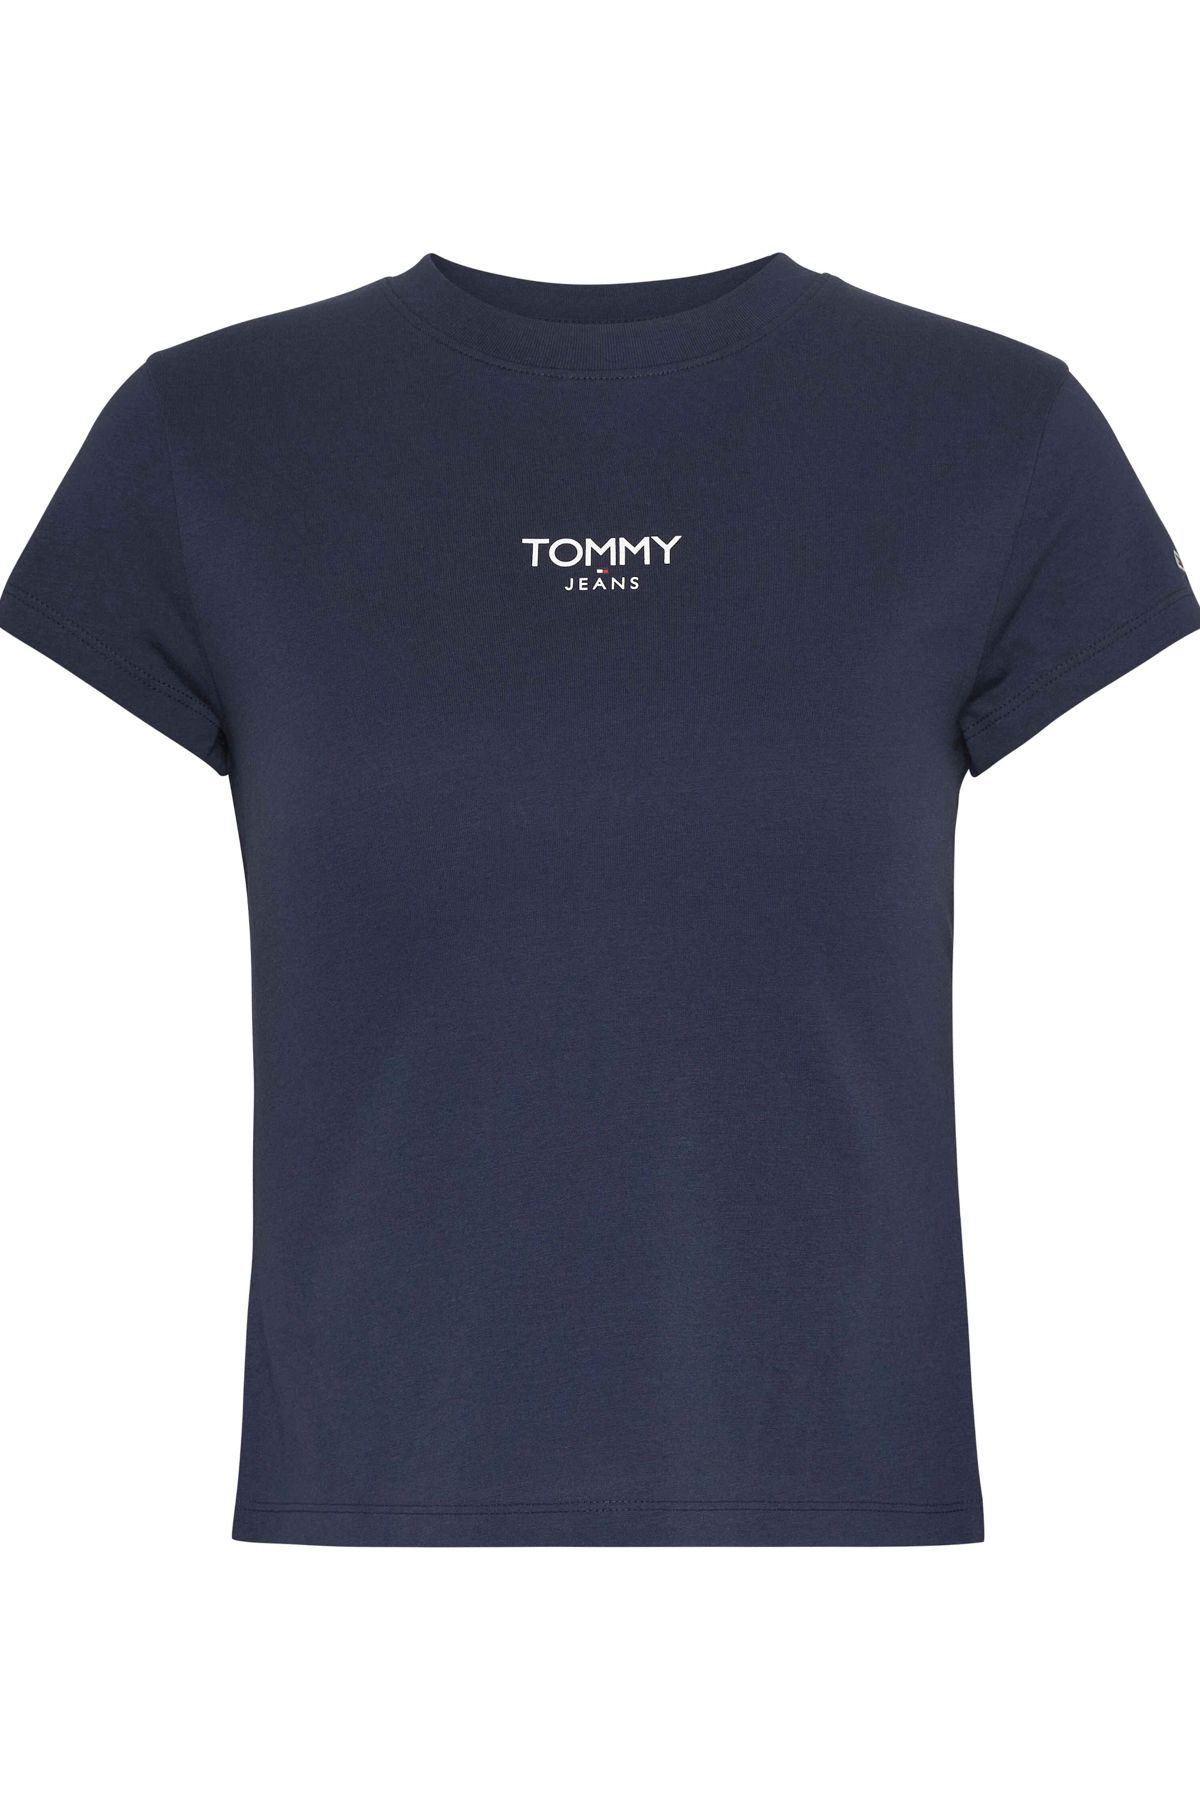 Tommy Hilfiger T-Shirt Navy Trendyol / - Damen Twilight Mädchen